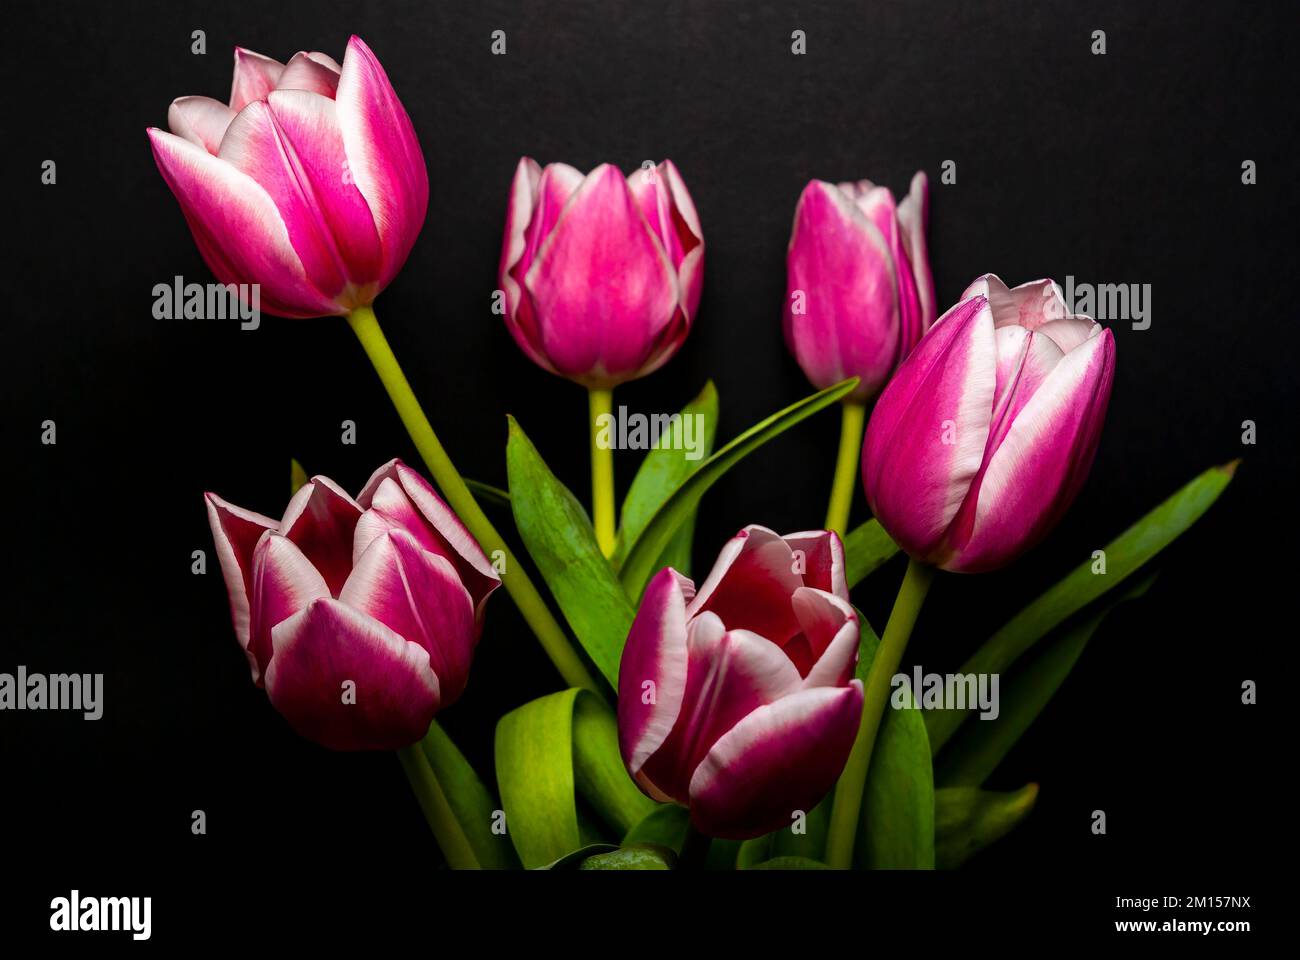 Schnittblumen in einer vase, Strauß Tulpen vor schwarzem hintergrund freigestellt. Fleurs coupées dans un vase, bouquet de tulipes sur un dos noir Banque D'Images